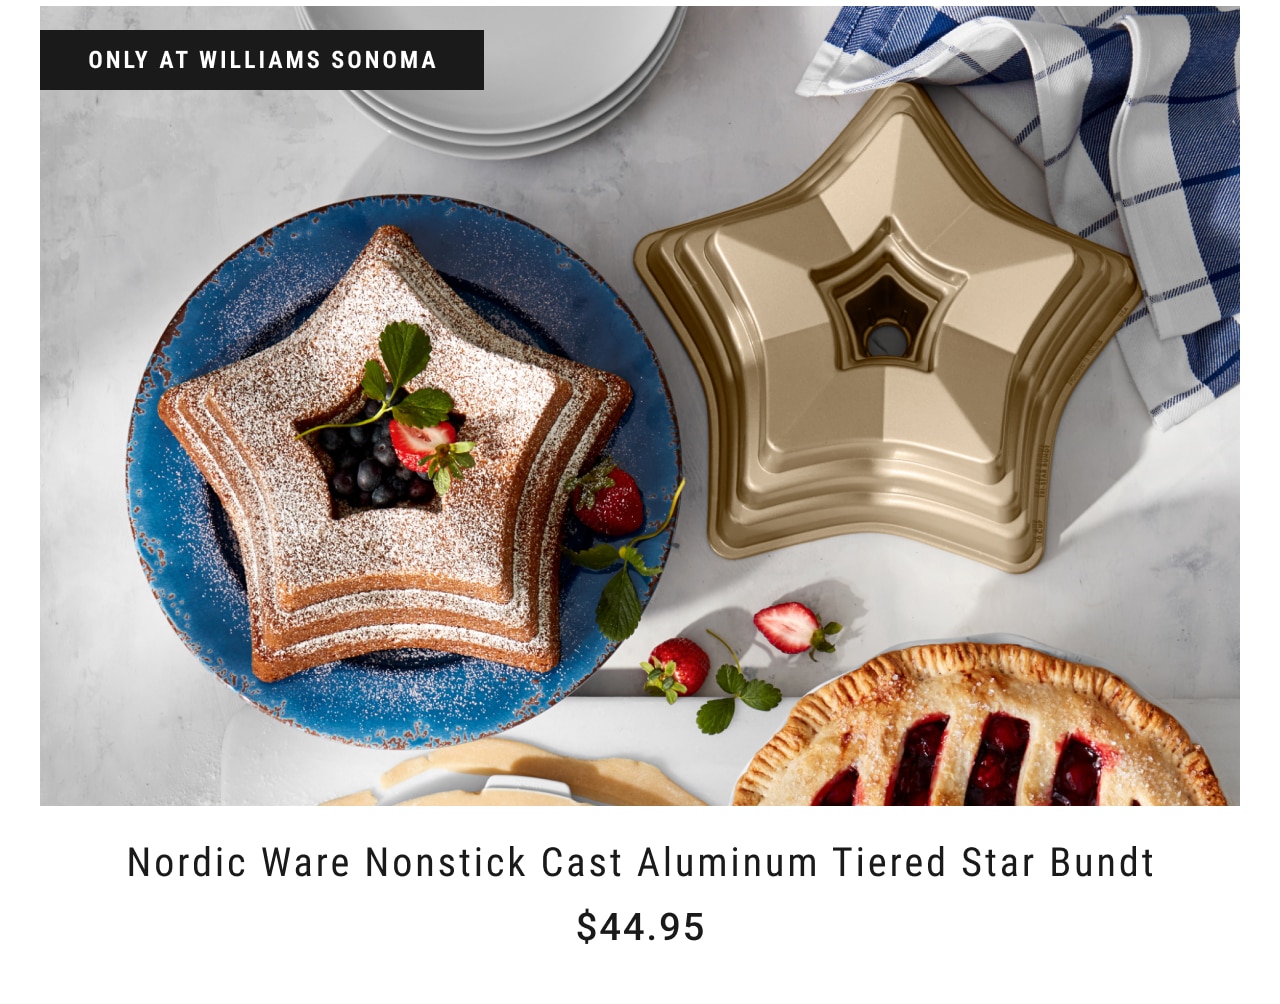 Nordic Ware Nonstick Cast Aluminum Tiered Star Bundt $44.95